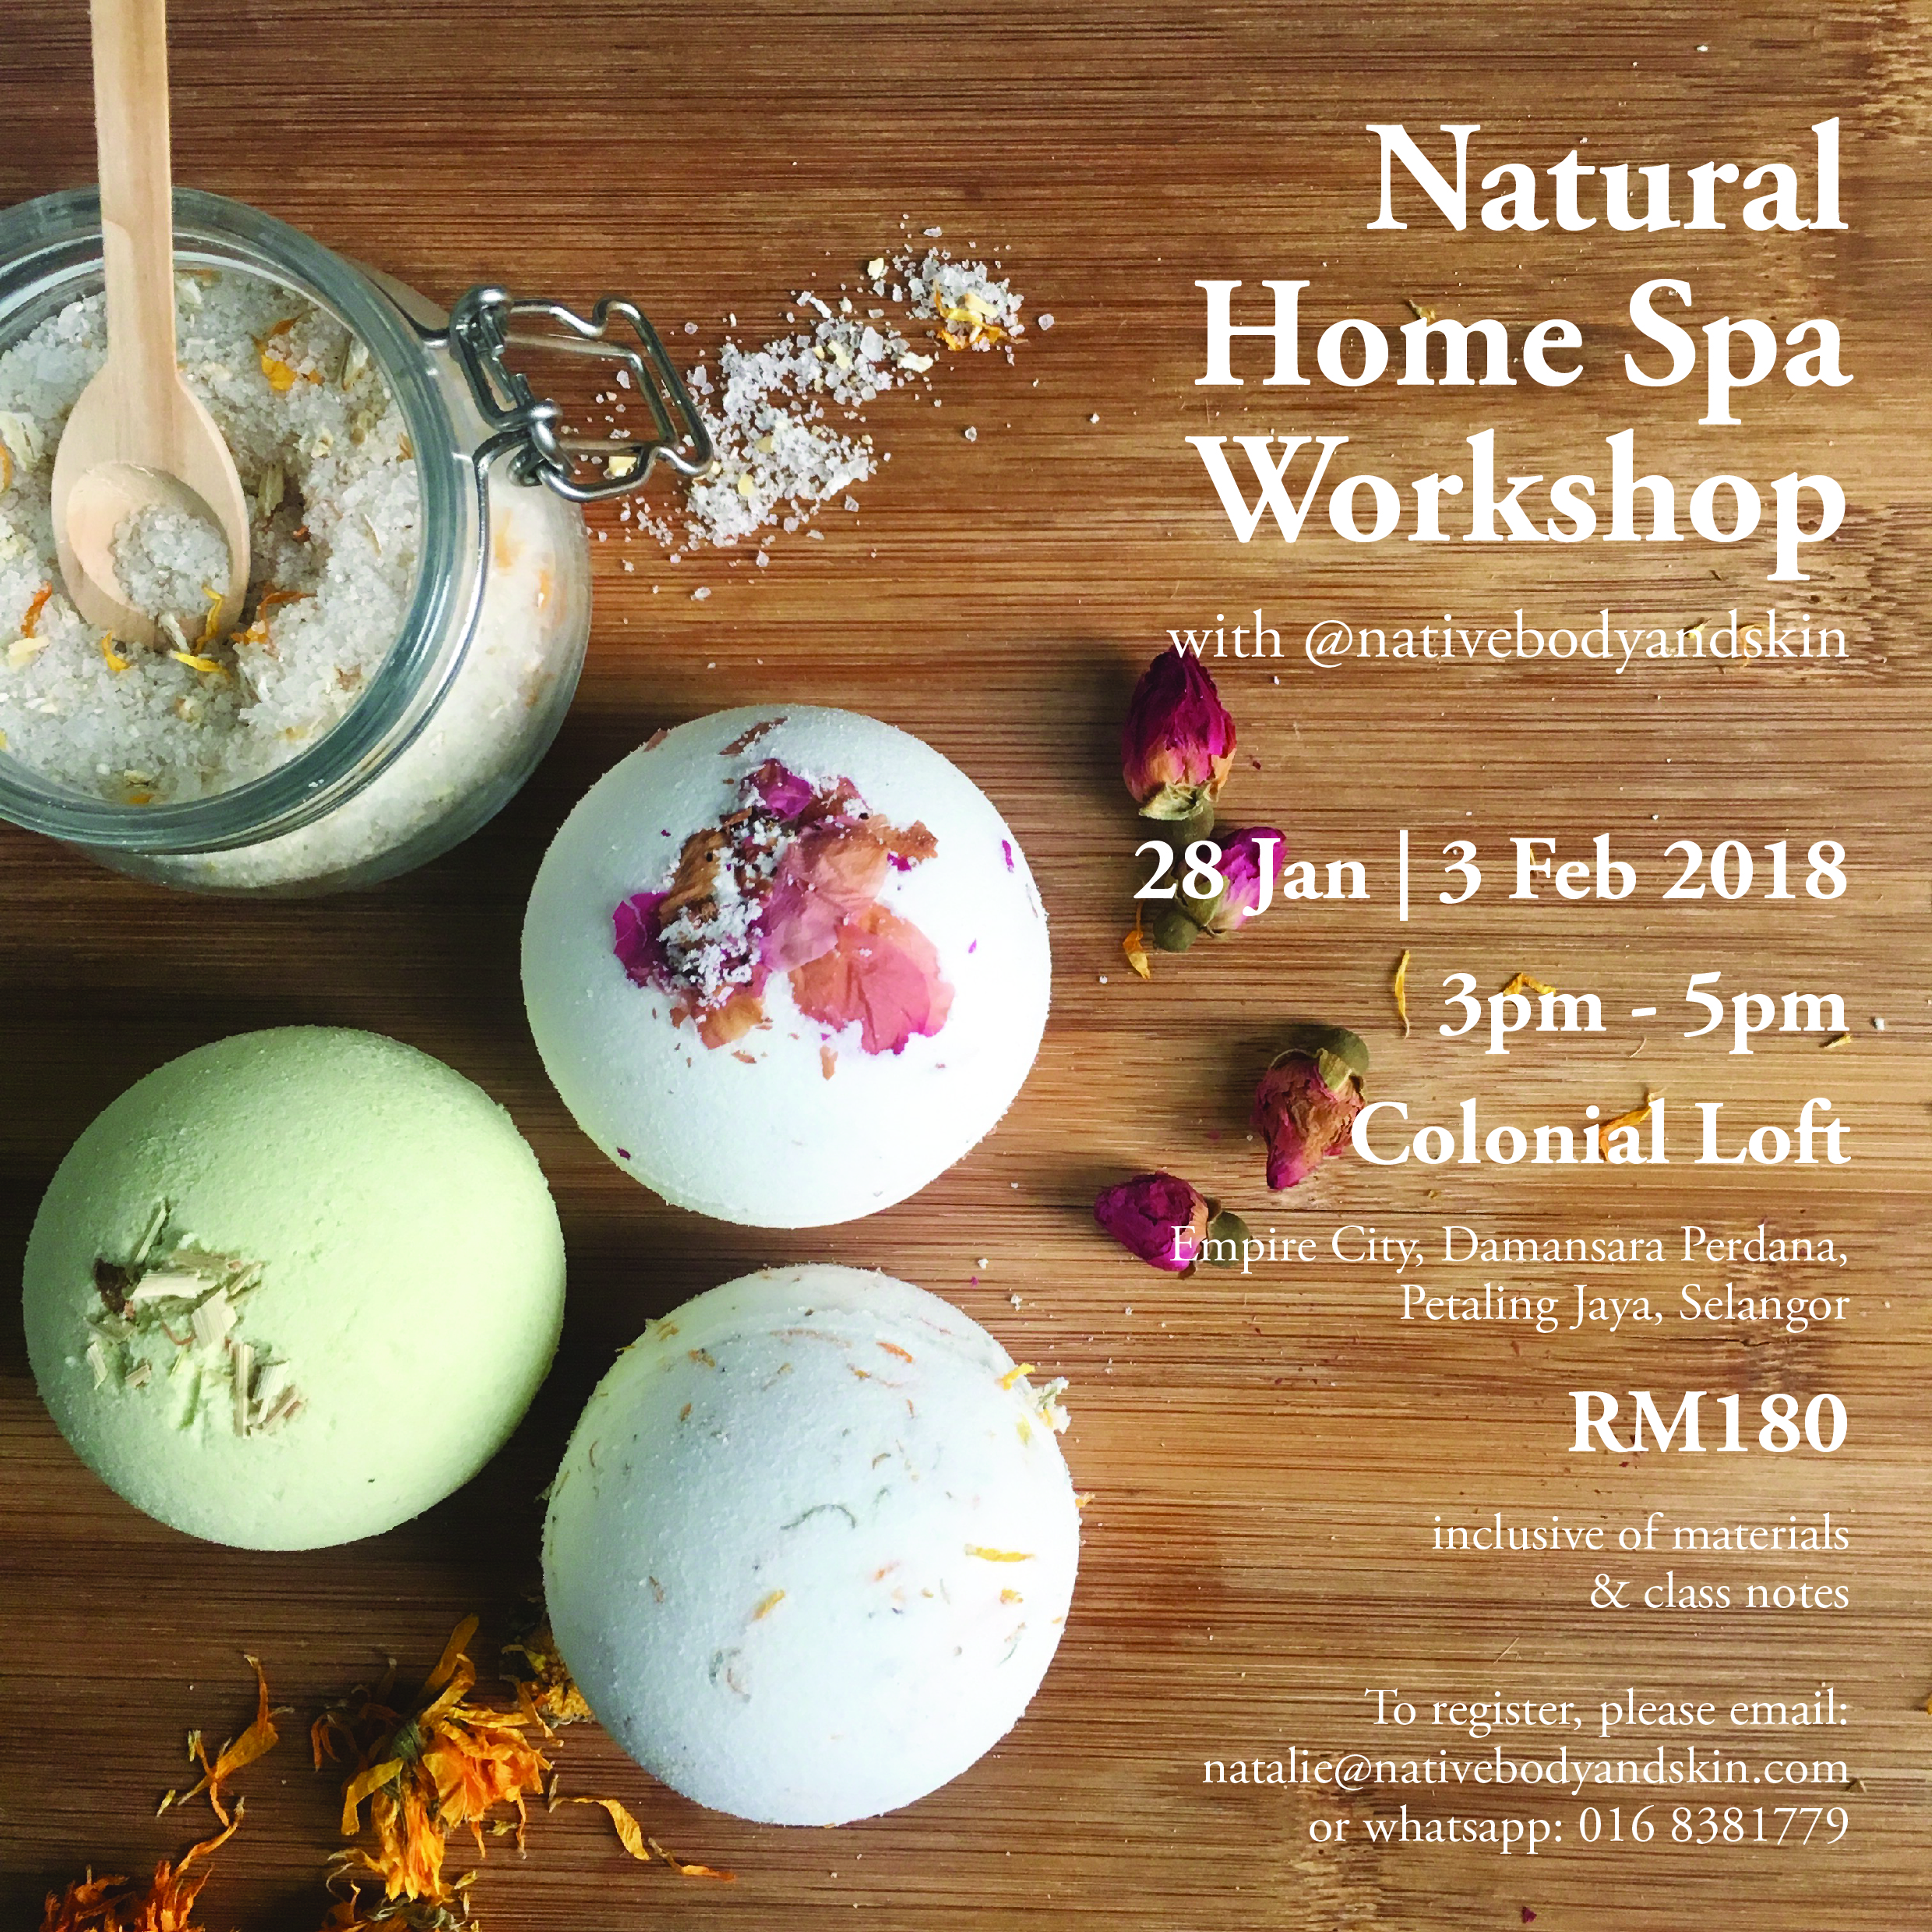 Natural Home Spa Workshop Poster.jpg